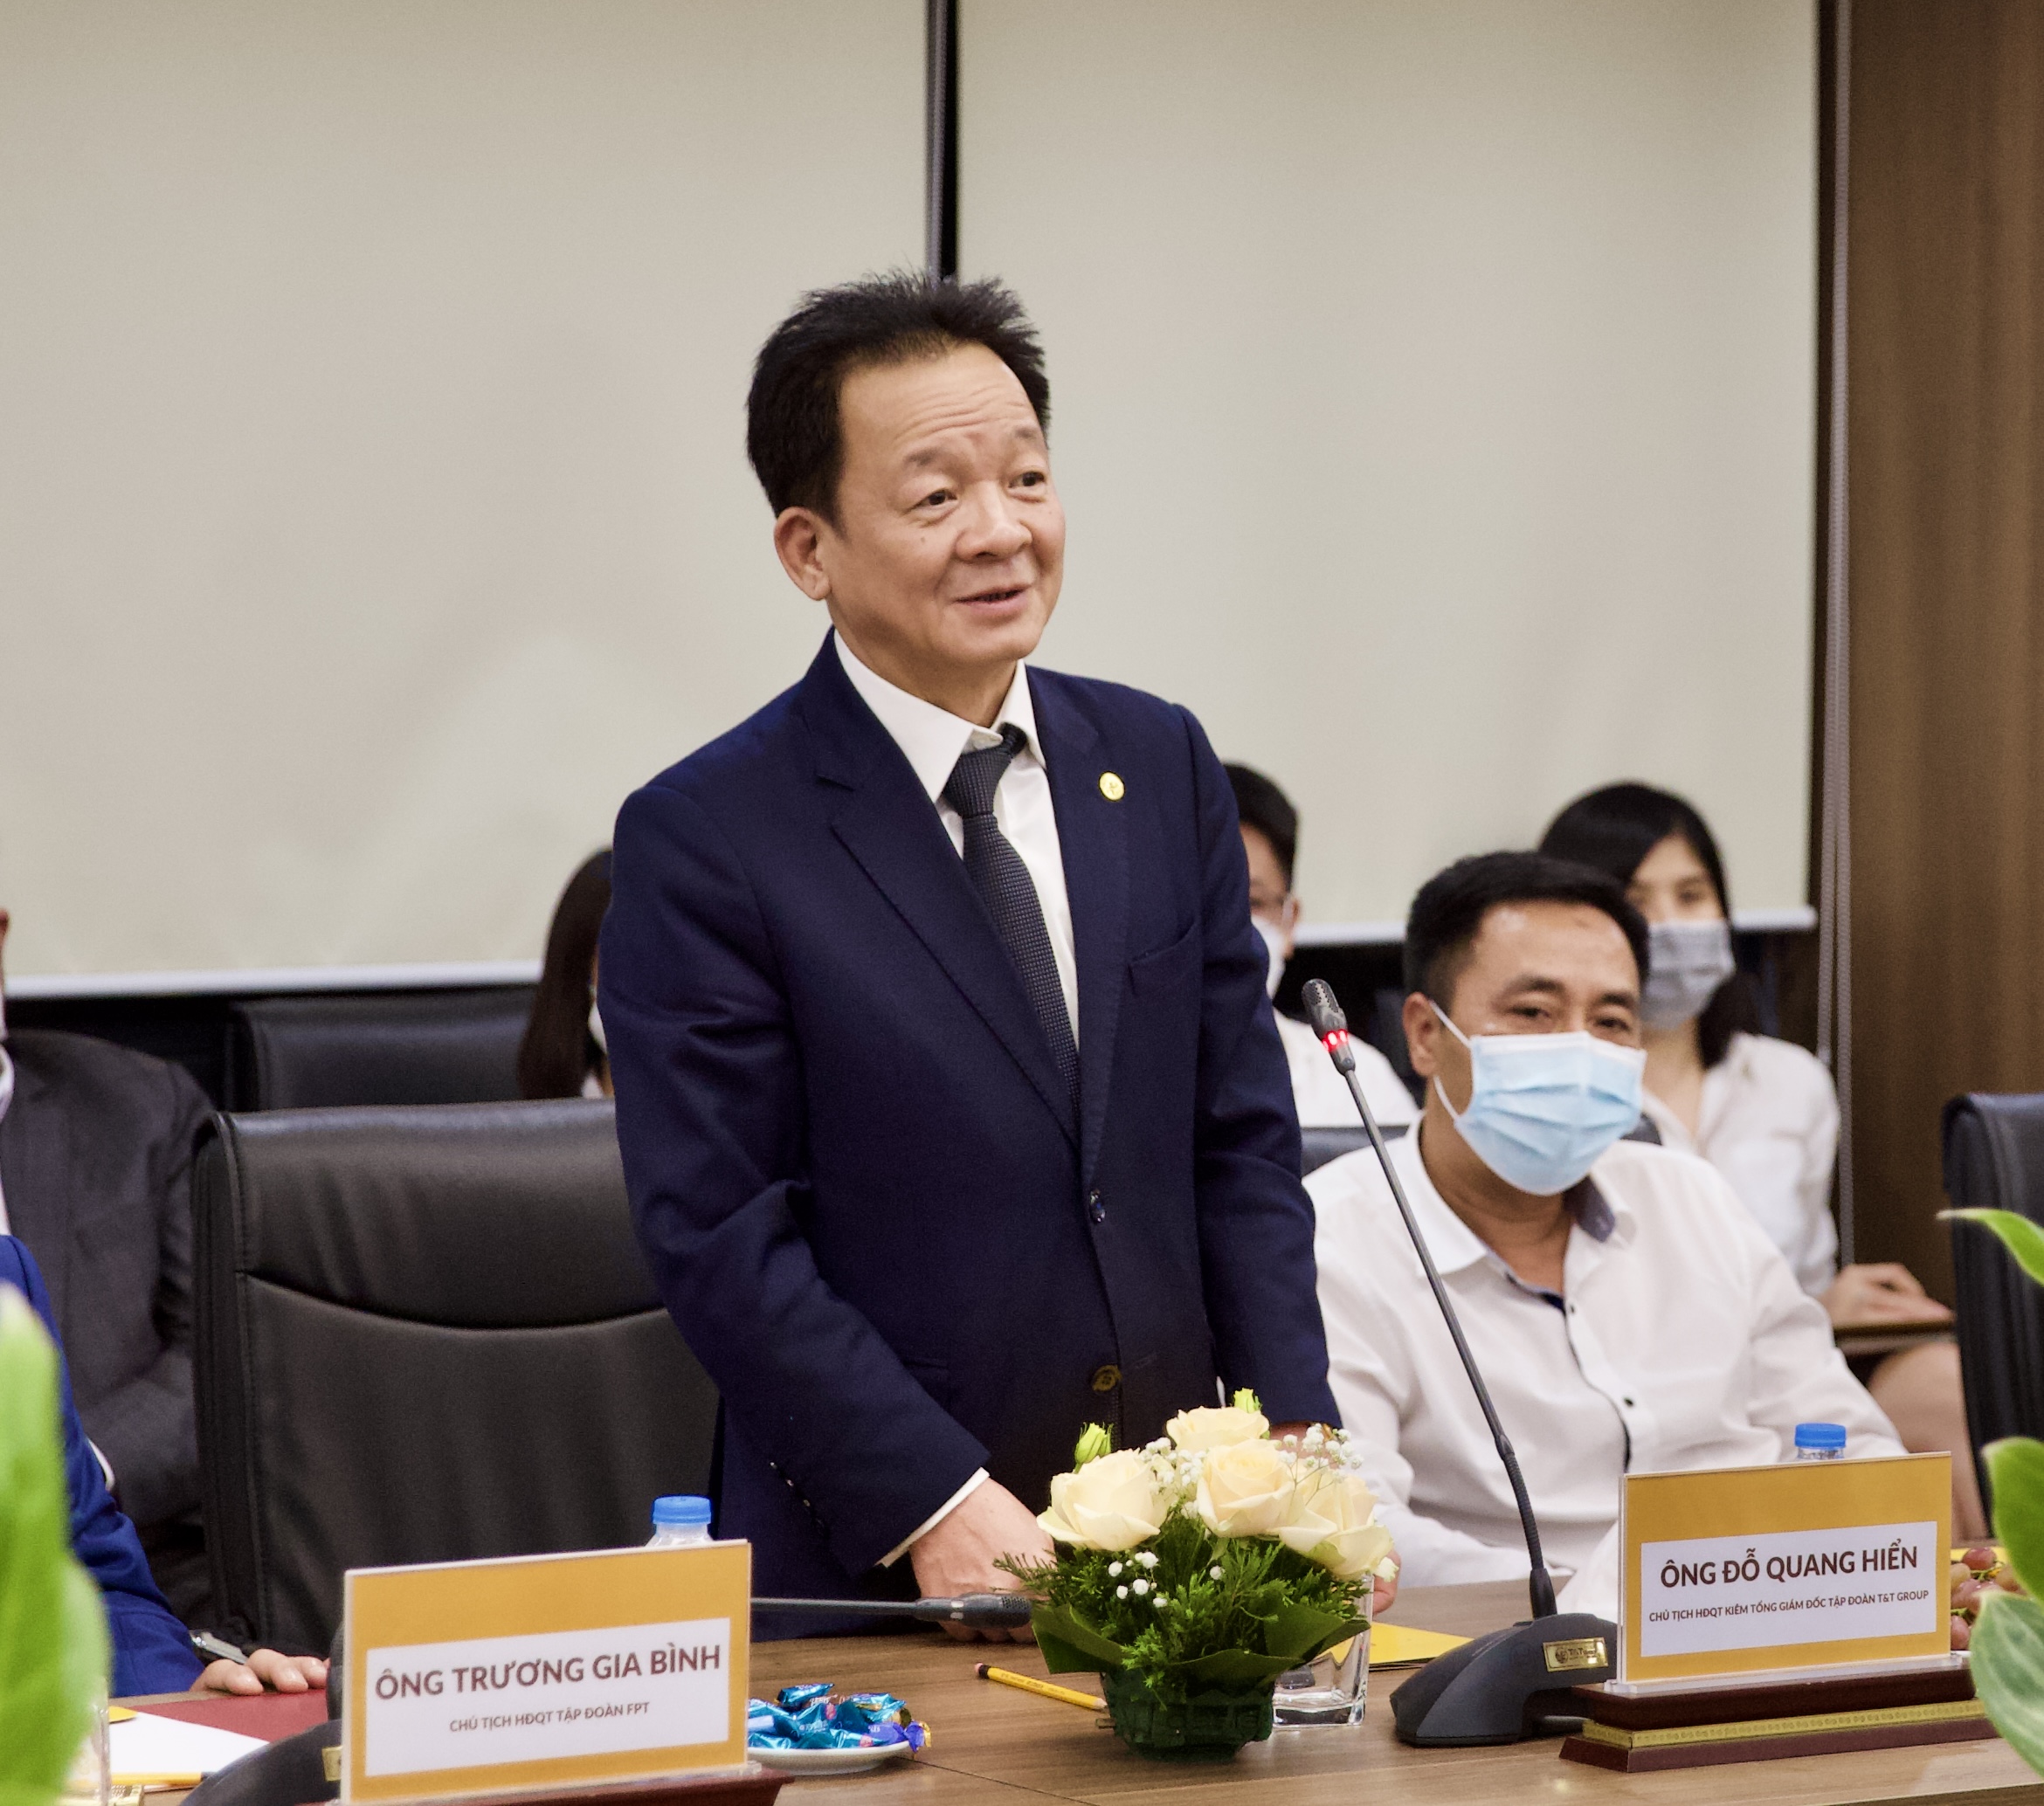 Kinh doanh - Quảng Trị trao quyết định chủ trương đầu tư dự án Trung tâm điện khí LNG Hải Lăng trị giá 2,3 tỷ USD (Hình 2).